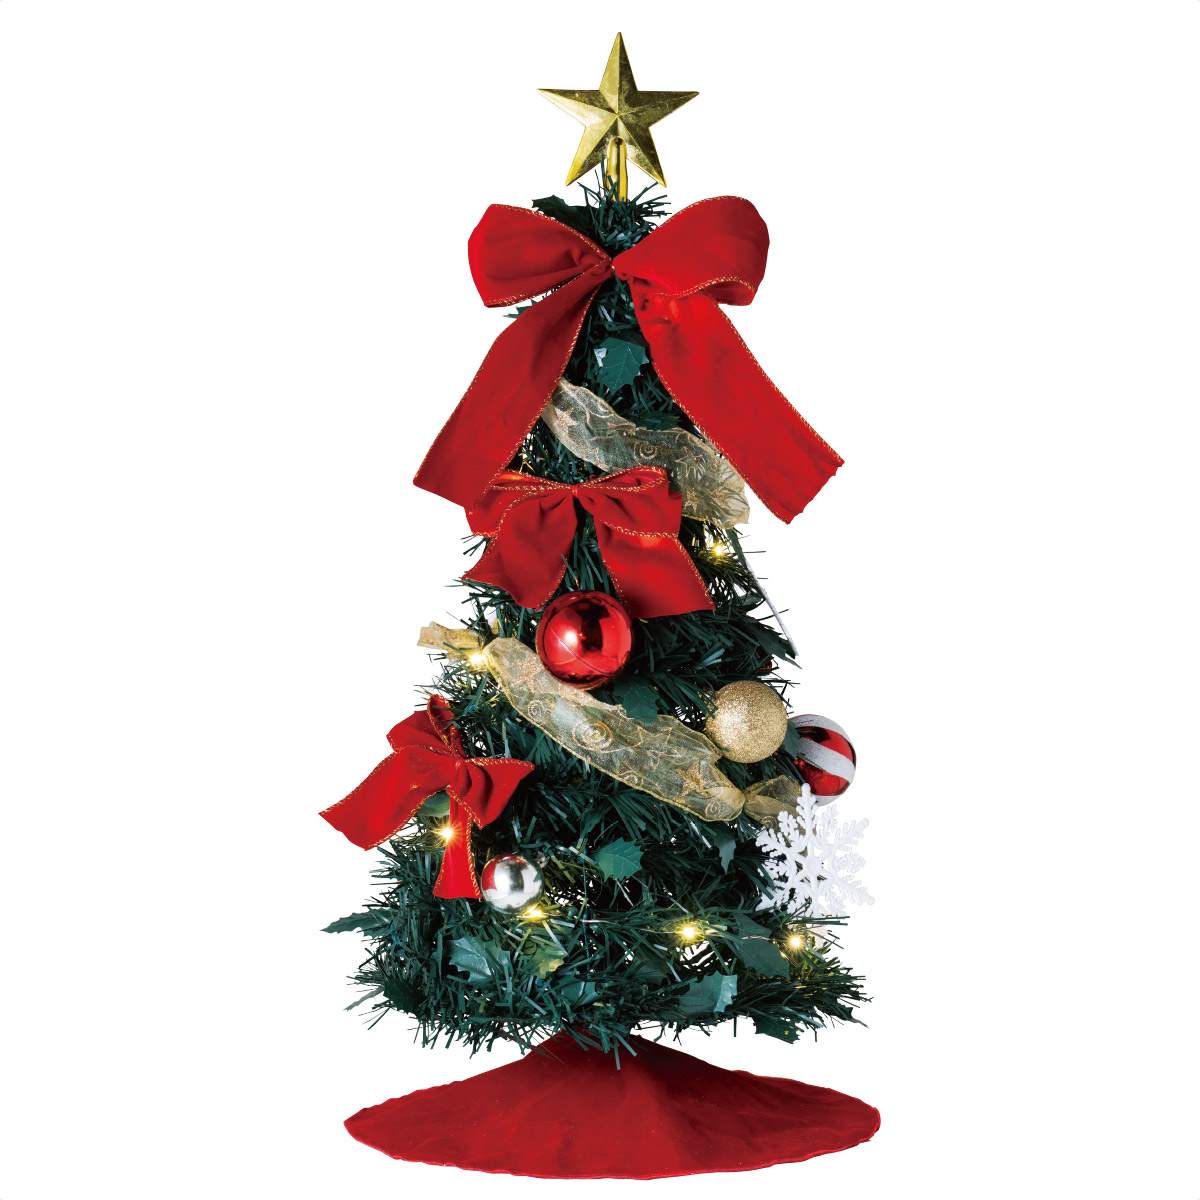 60cm Ledフォールディングツリー クリスマスツリー 卓上 ディスプレイ ツリースカート付 折りたたみ可 通販 ストア エキスプレス